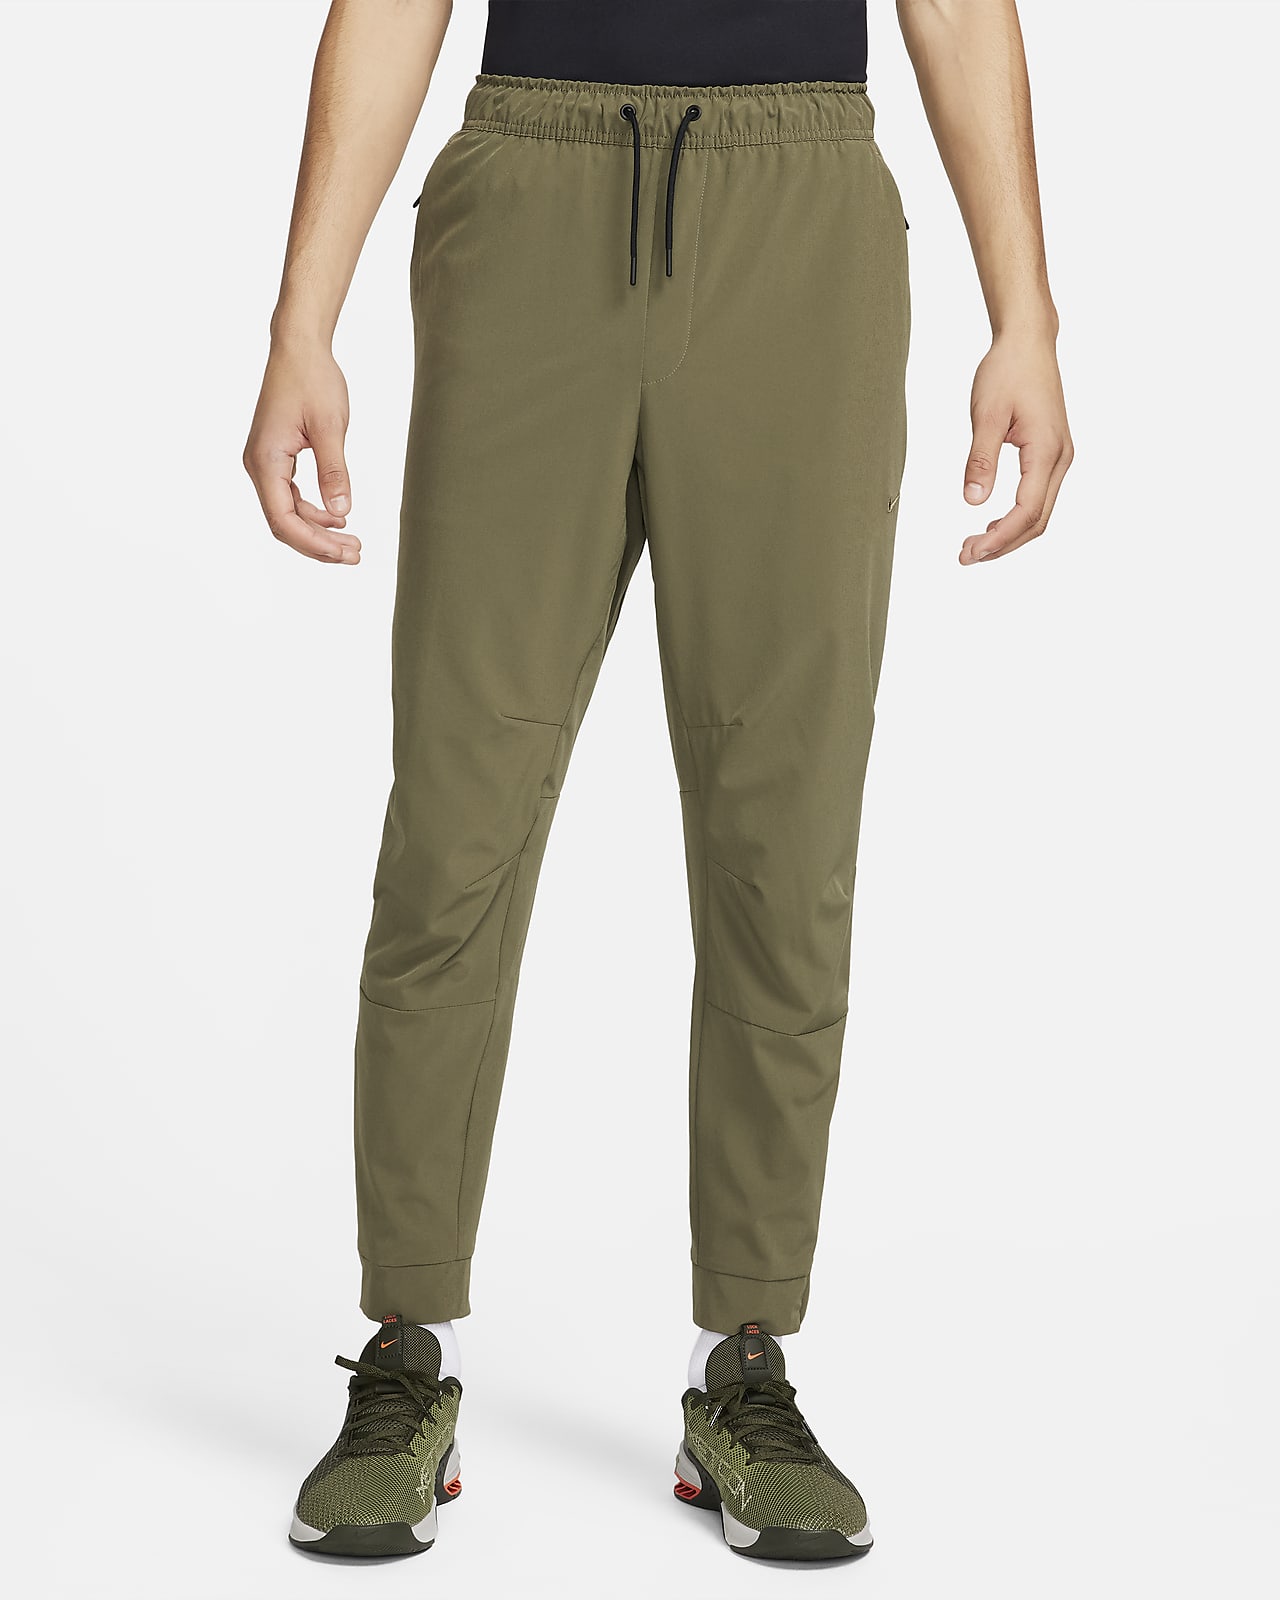 Ανδρικό ευέλικτο παντελόνι Dri-FIT με φερμουάρ στα ρεβέρ Nike Unlimited